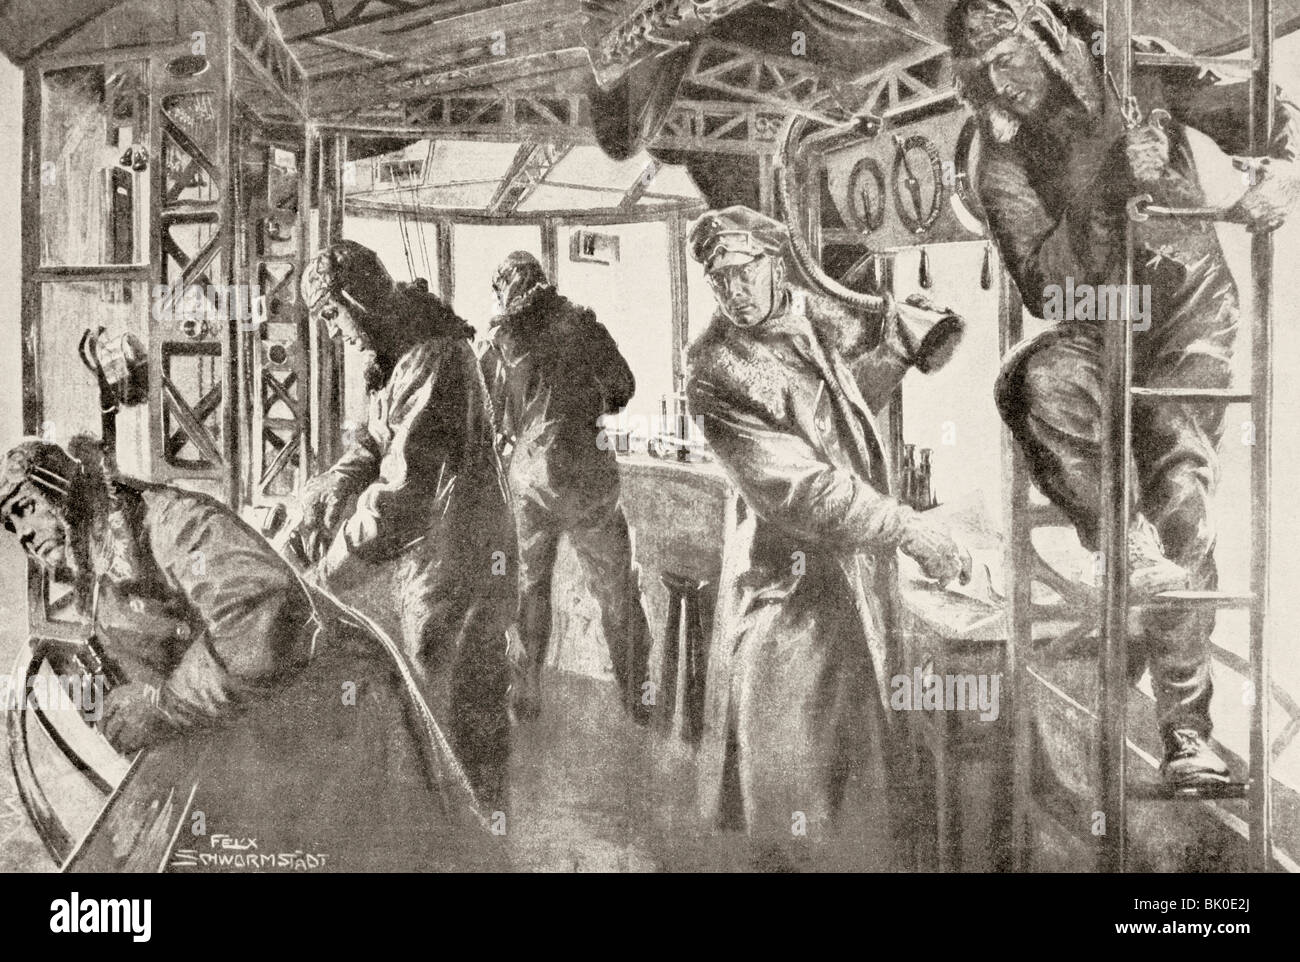 Der Kommandant Post in der Kabine ein Zeppelin Luftschiff während des ersten Weltkrieges. Stockfoto